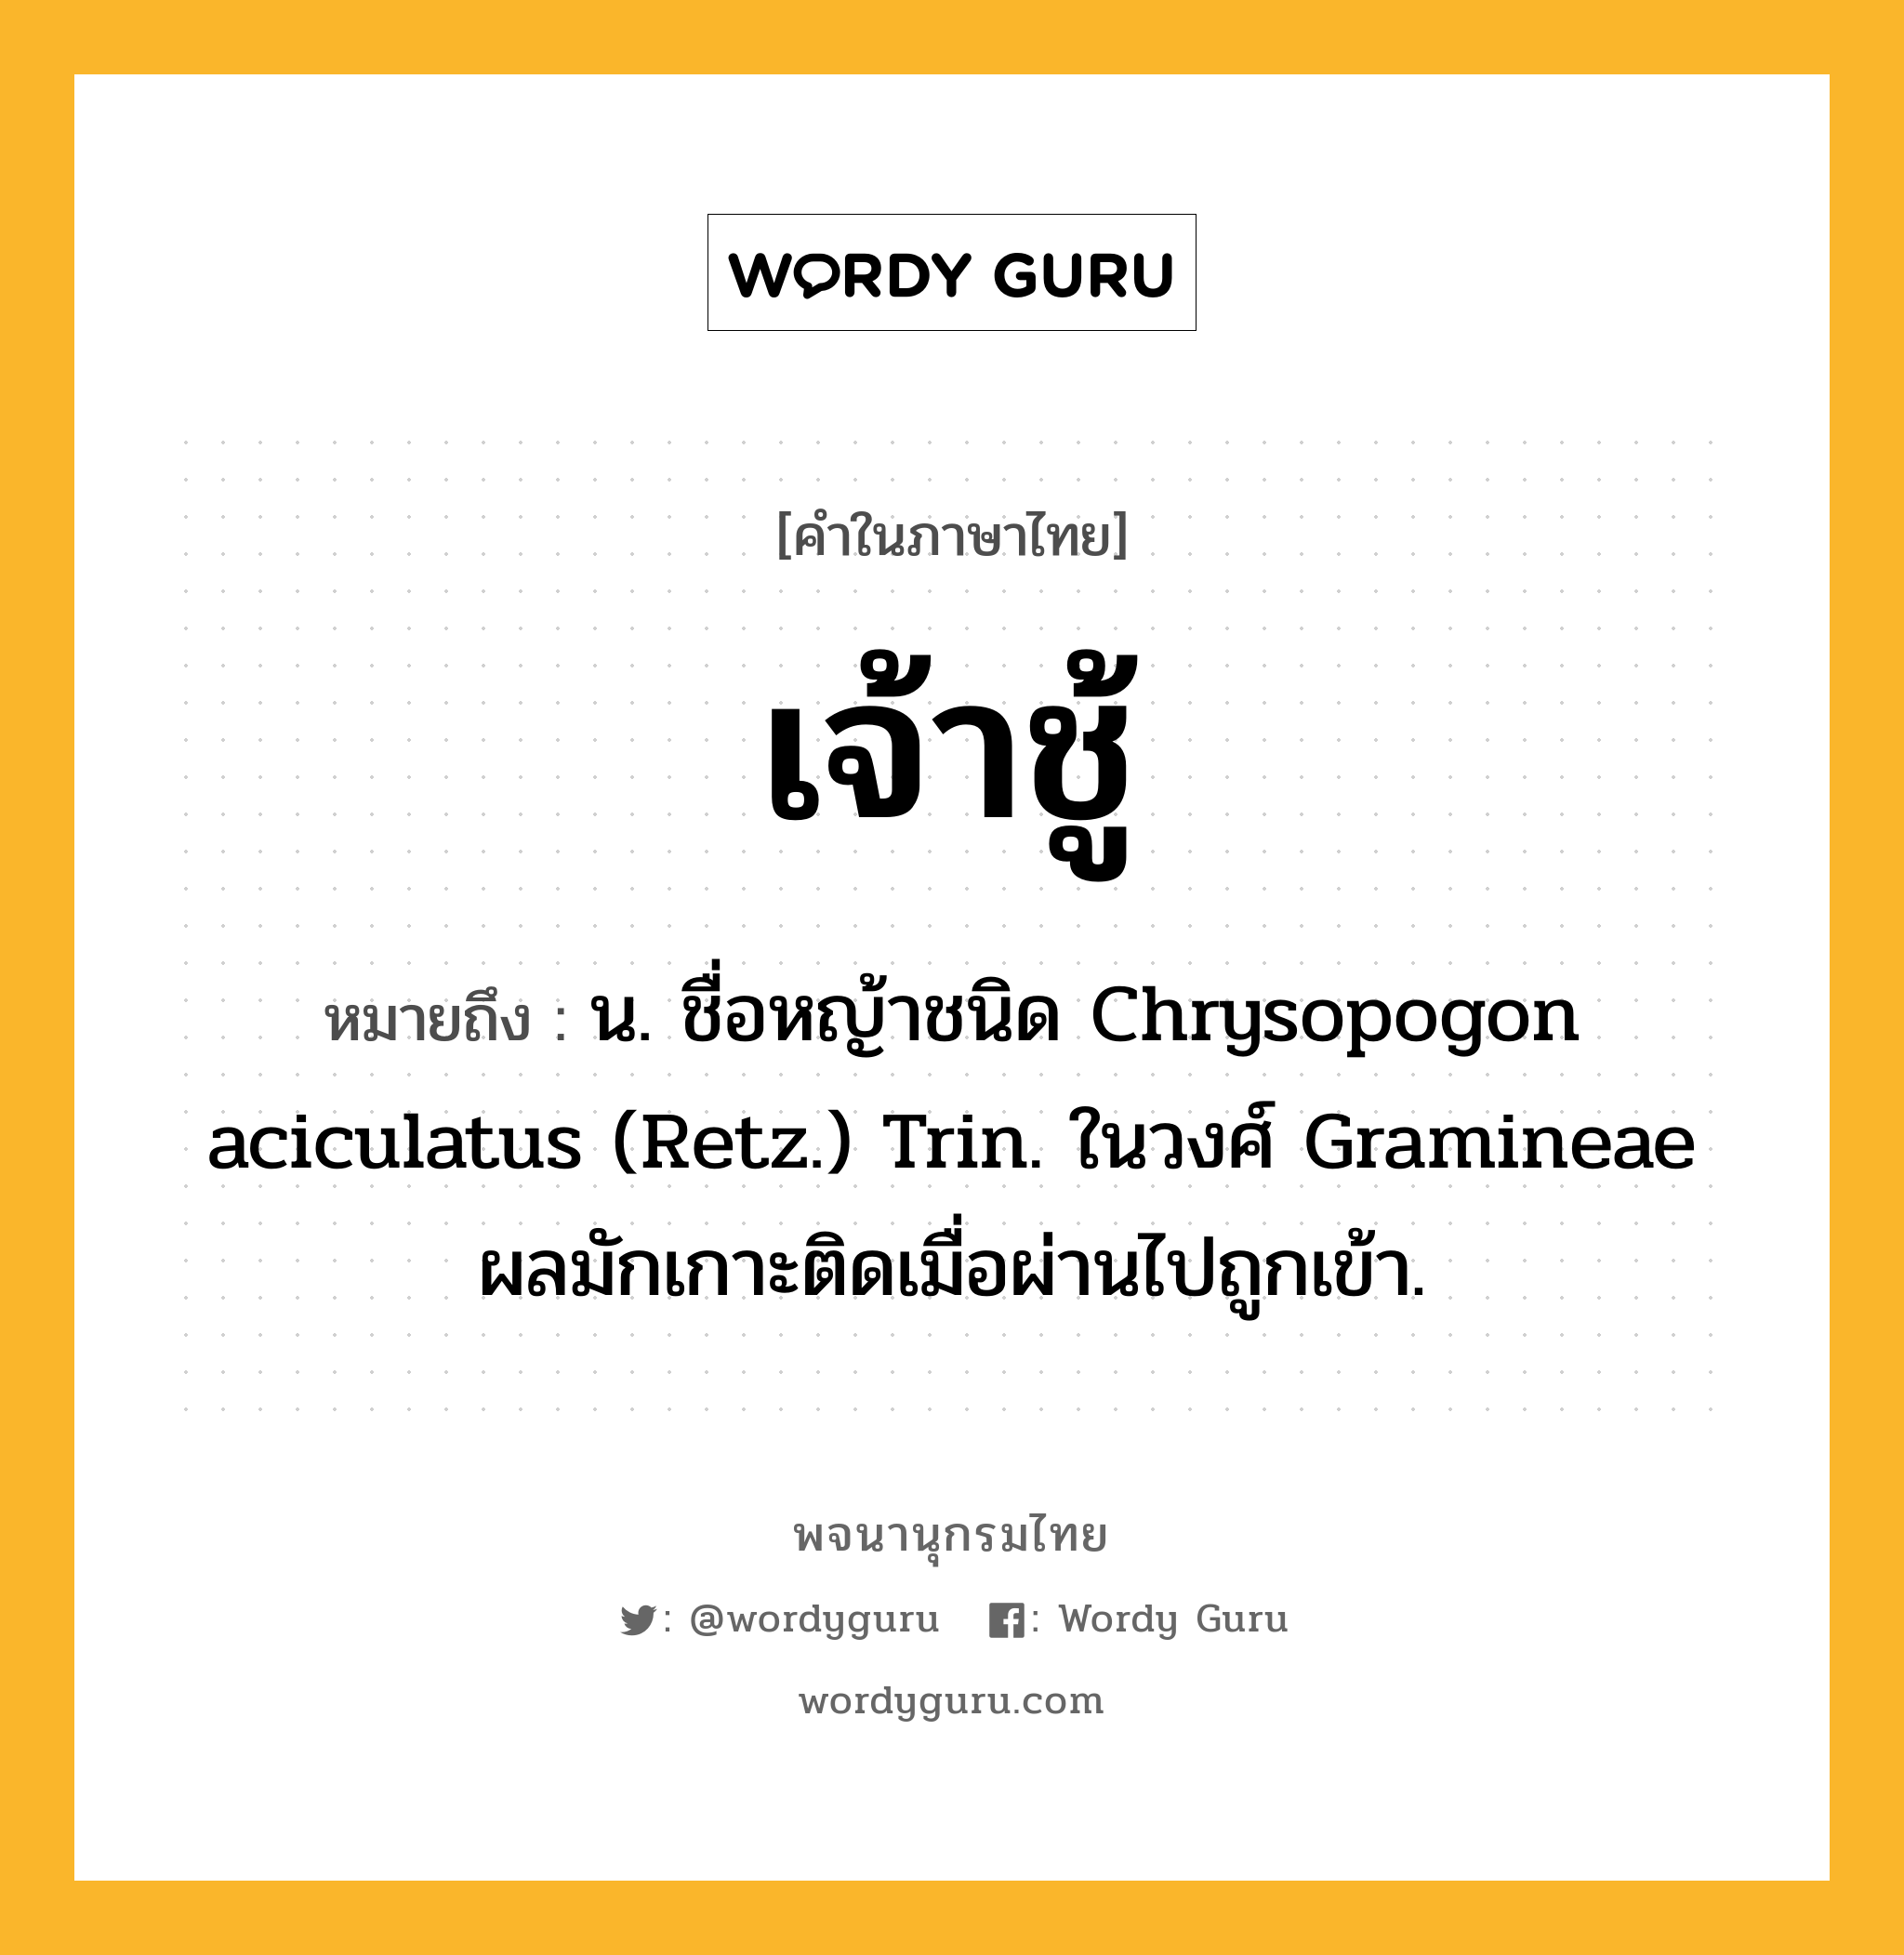 เจ้าชู้ หมายถึงอะไร?, คำในภาษาไทย เจ้าชู้ หมายถึง น. ชื่อหญ้าชนิด Chrysopogon aciculatus (Retz.) Trin. ในวงศ์ Gramineae ผลมักเกาะติดเมื่อผ่านไปถูกเข้า.